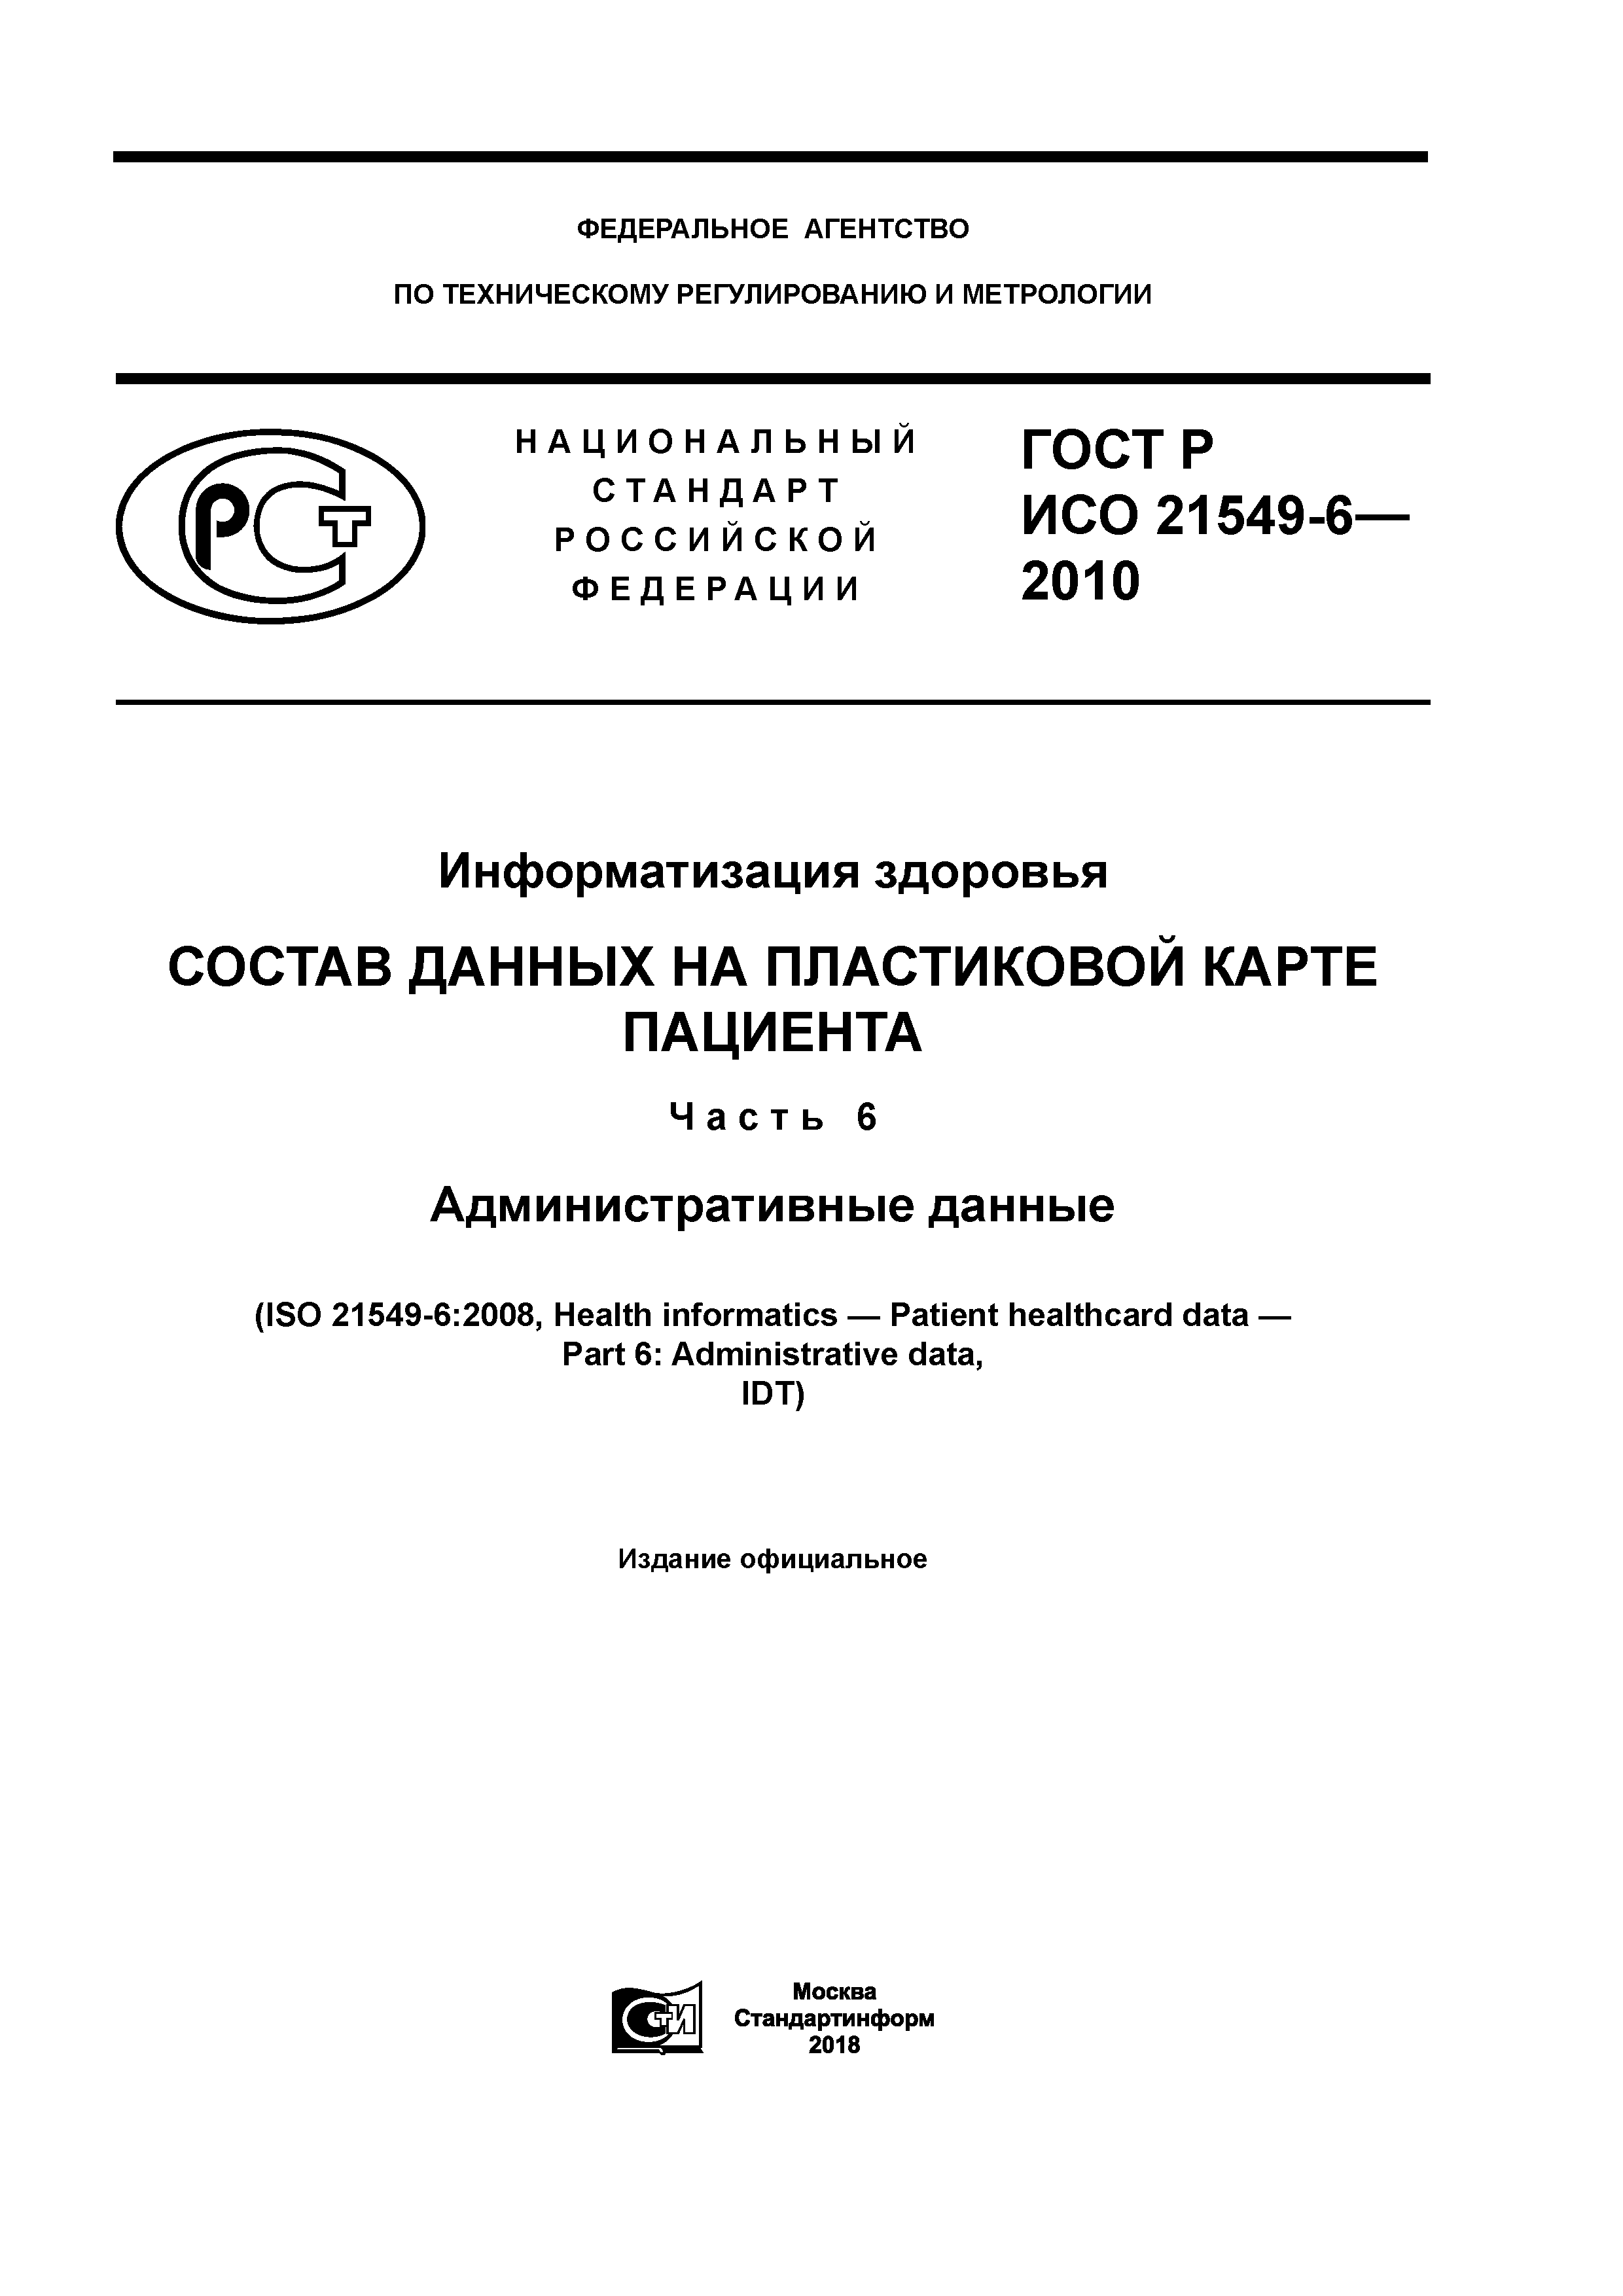 ГОСТ Р ИСО 21549-6-2010